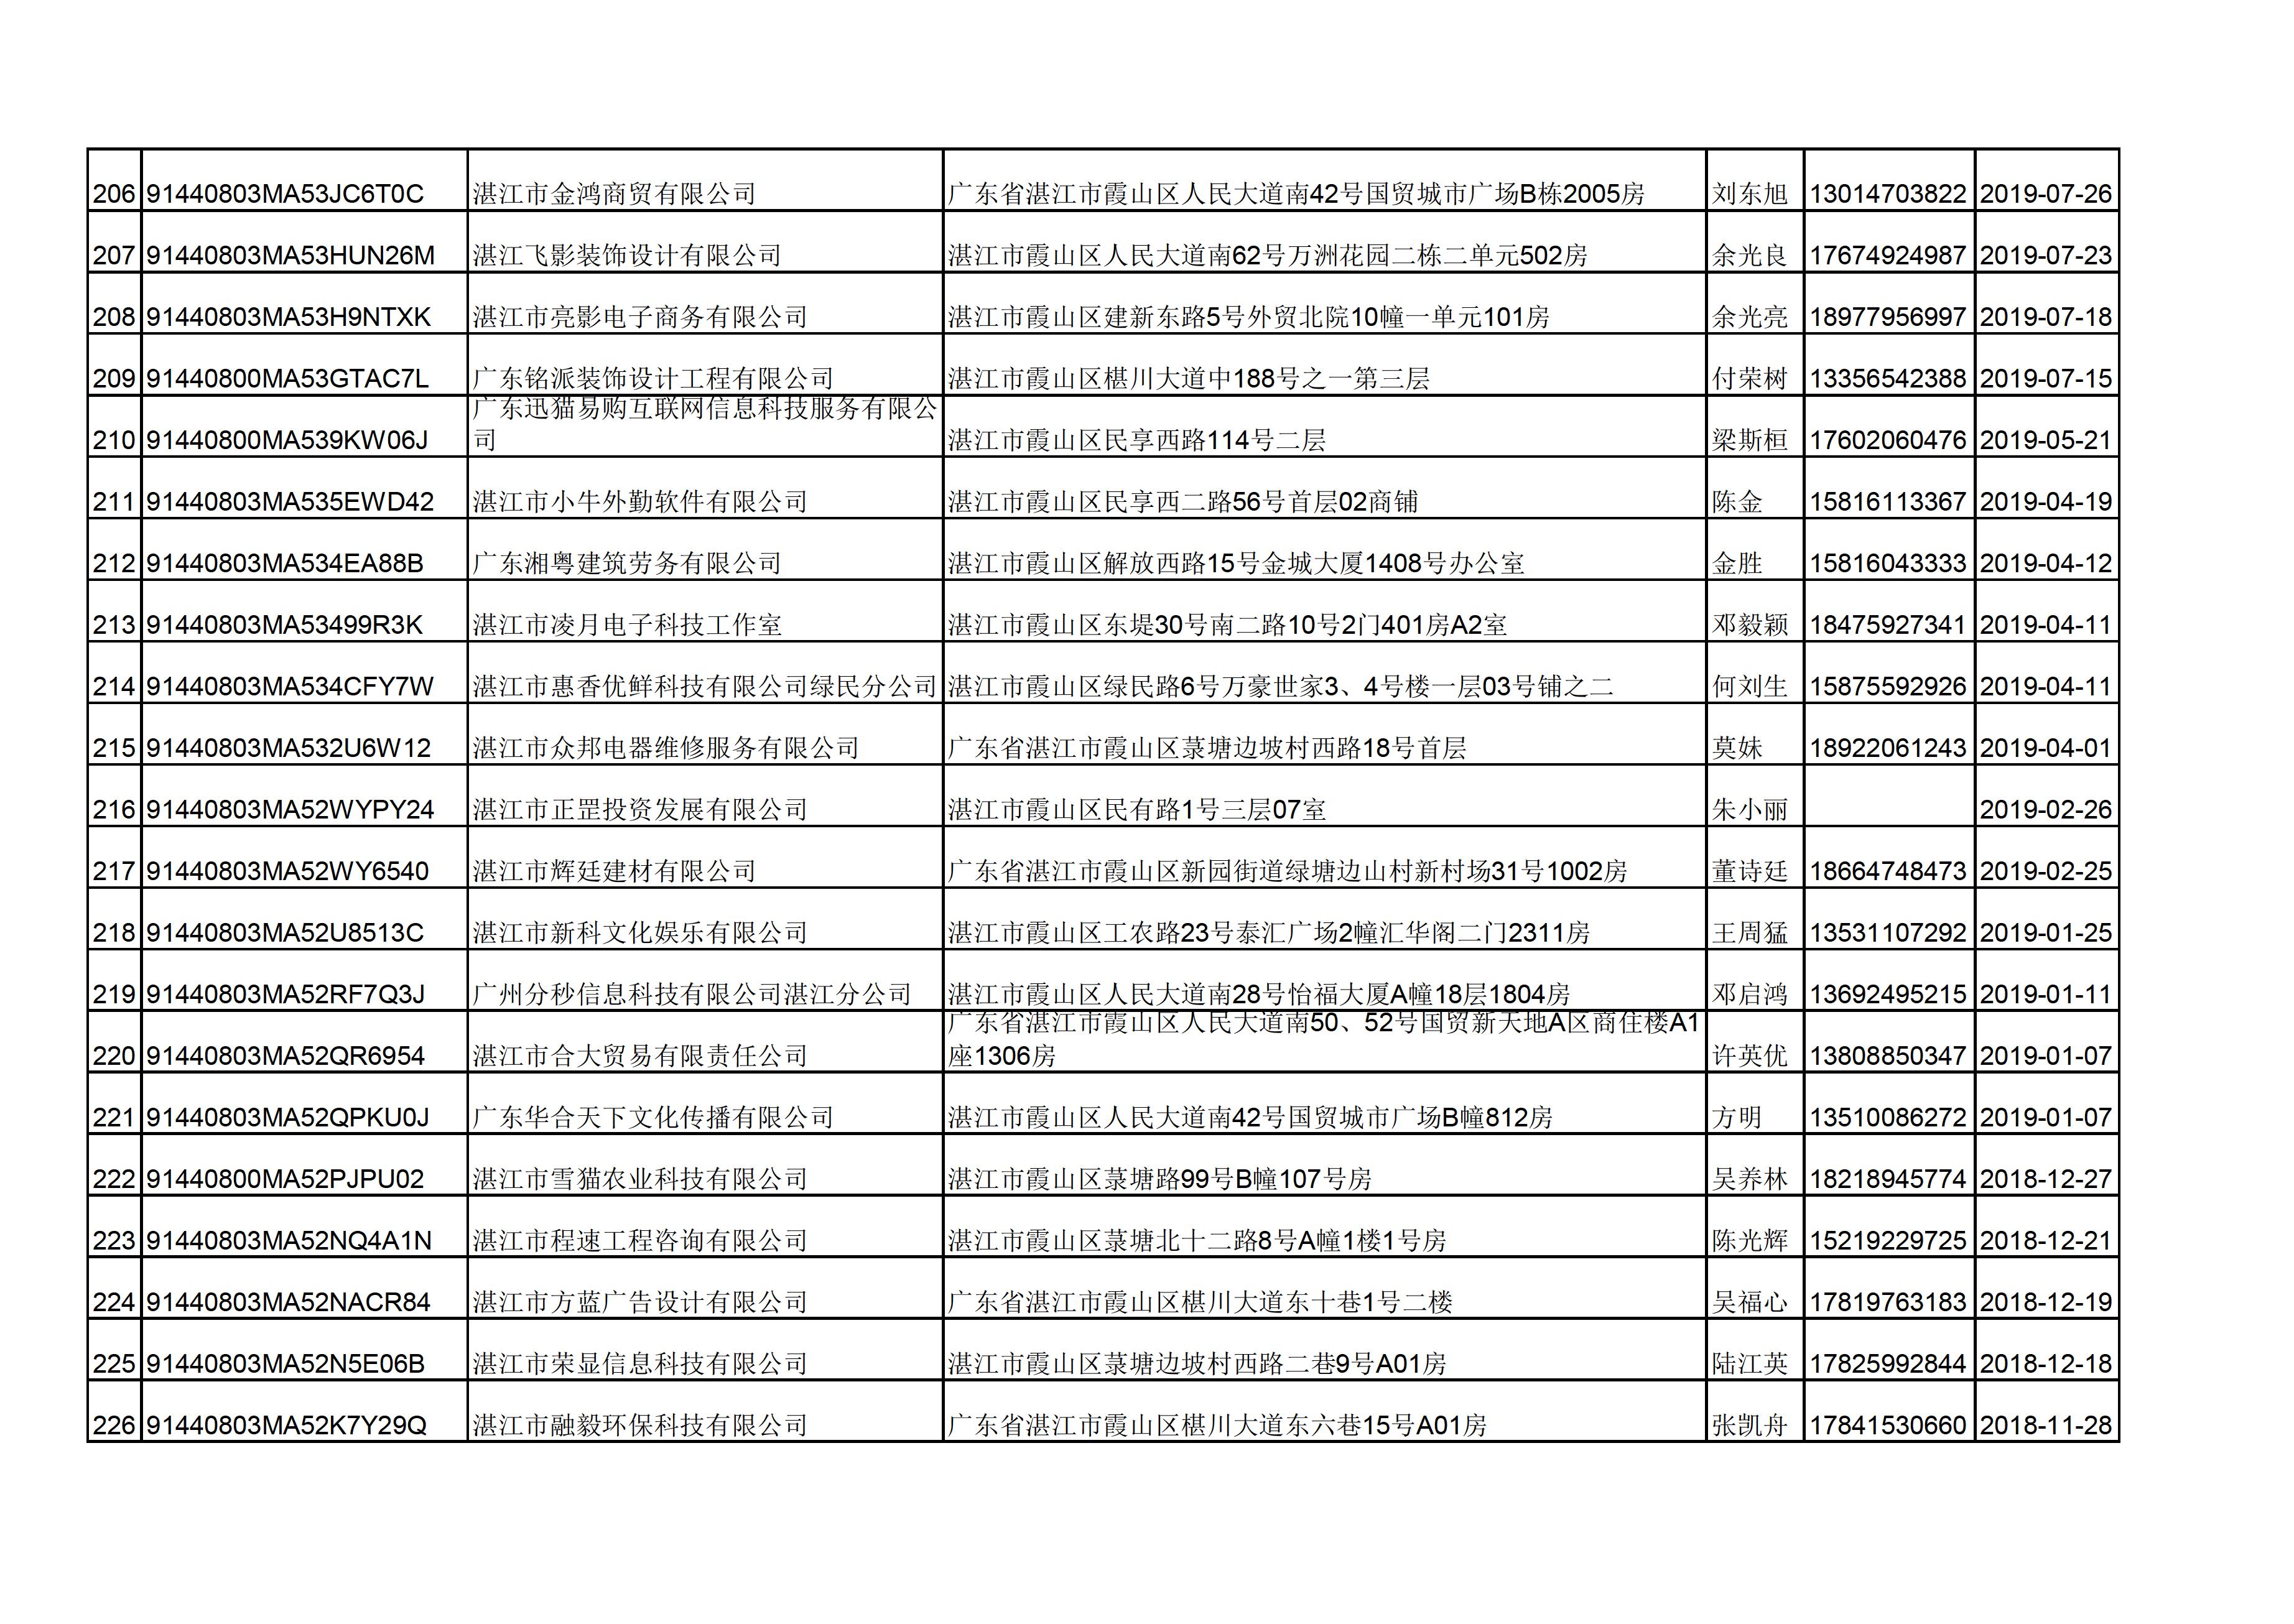 附件：湛江市诺萍文化传播有限公司等346户企业名单 - 0011.jpg